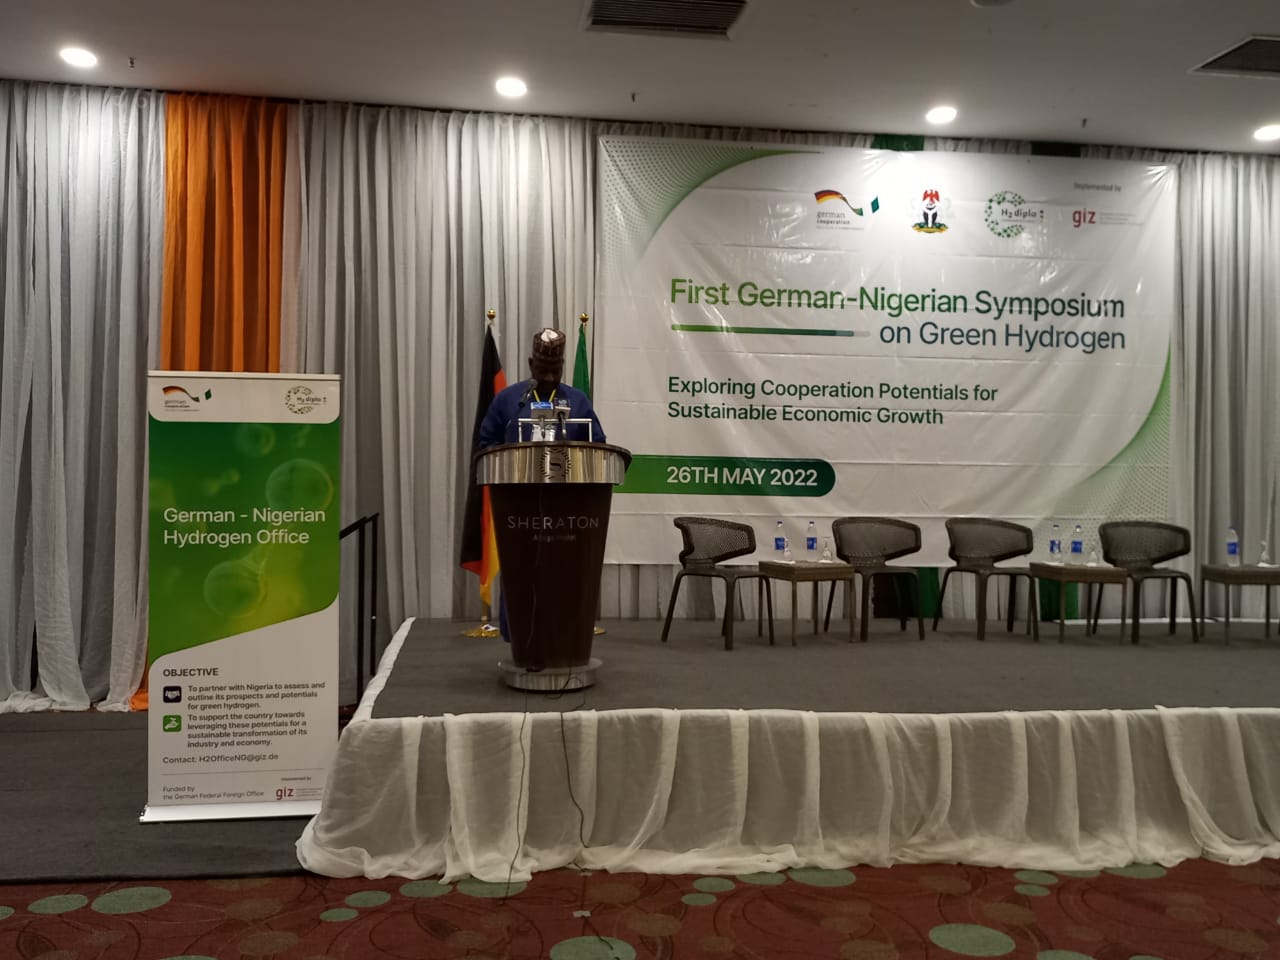 German-Nigerian Hydrogen Office Hosts First Symposium on Green Hydrogen